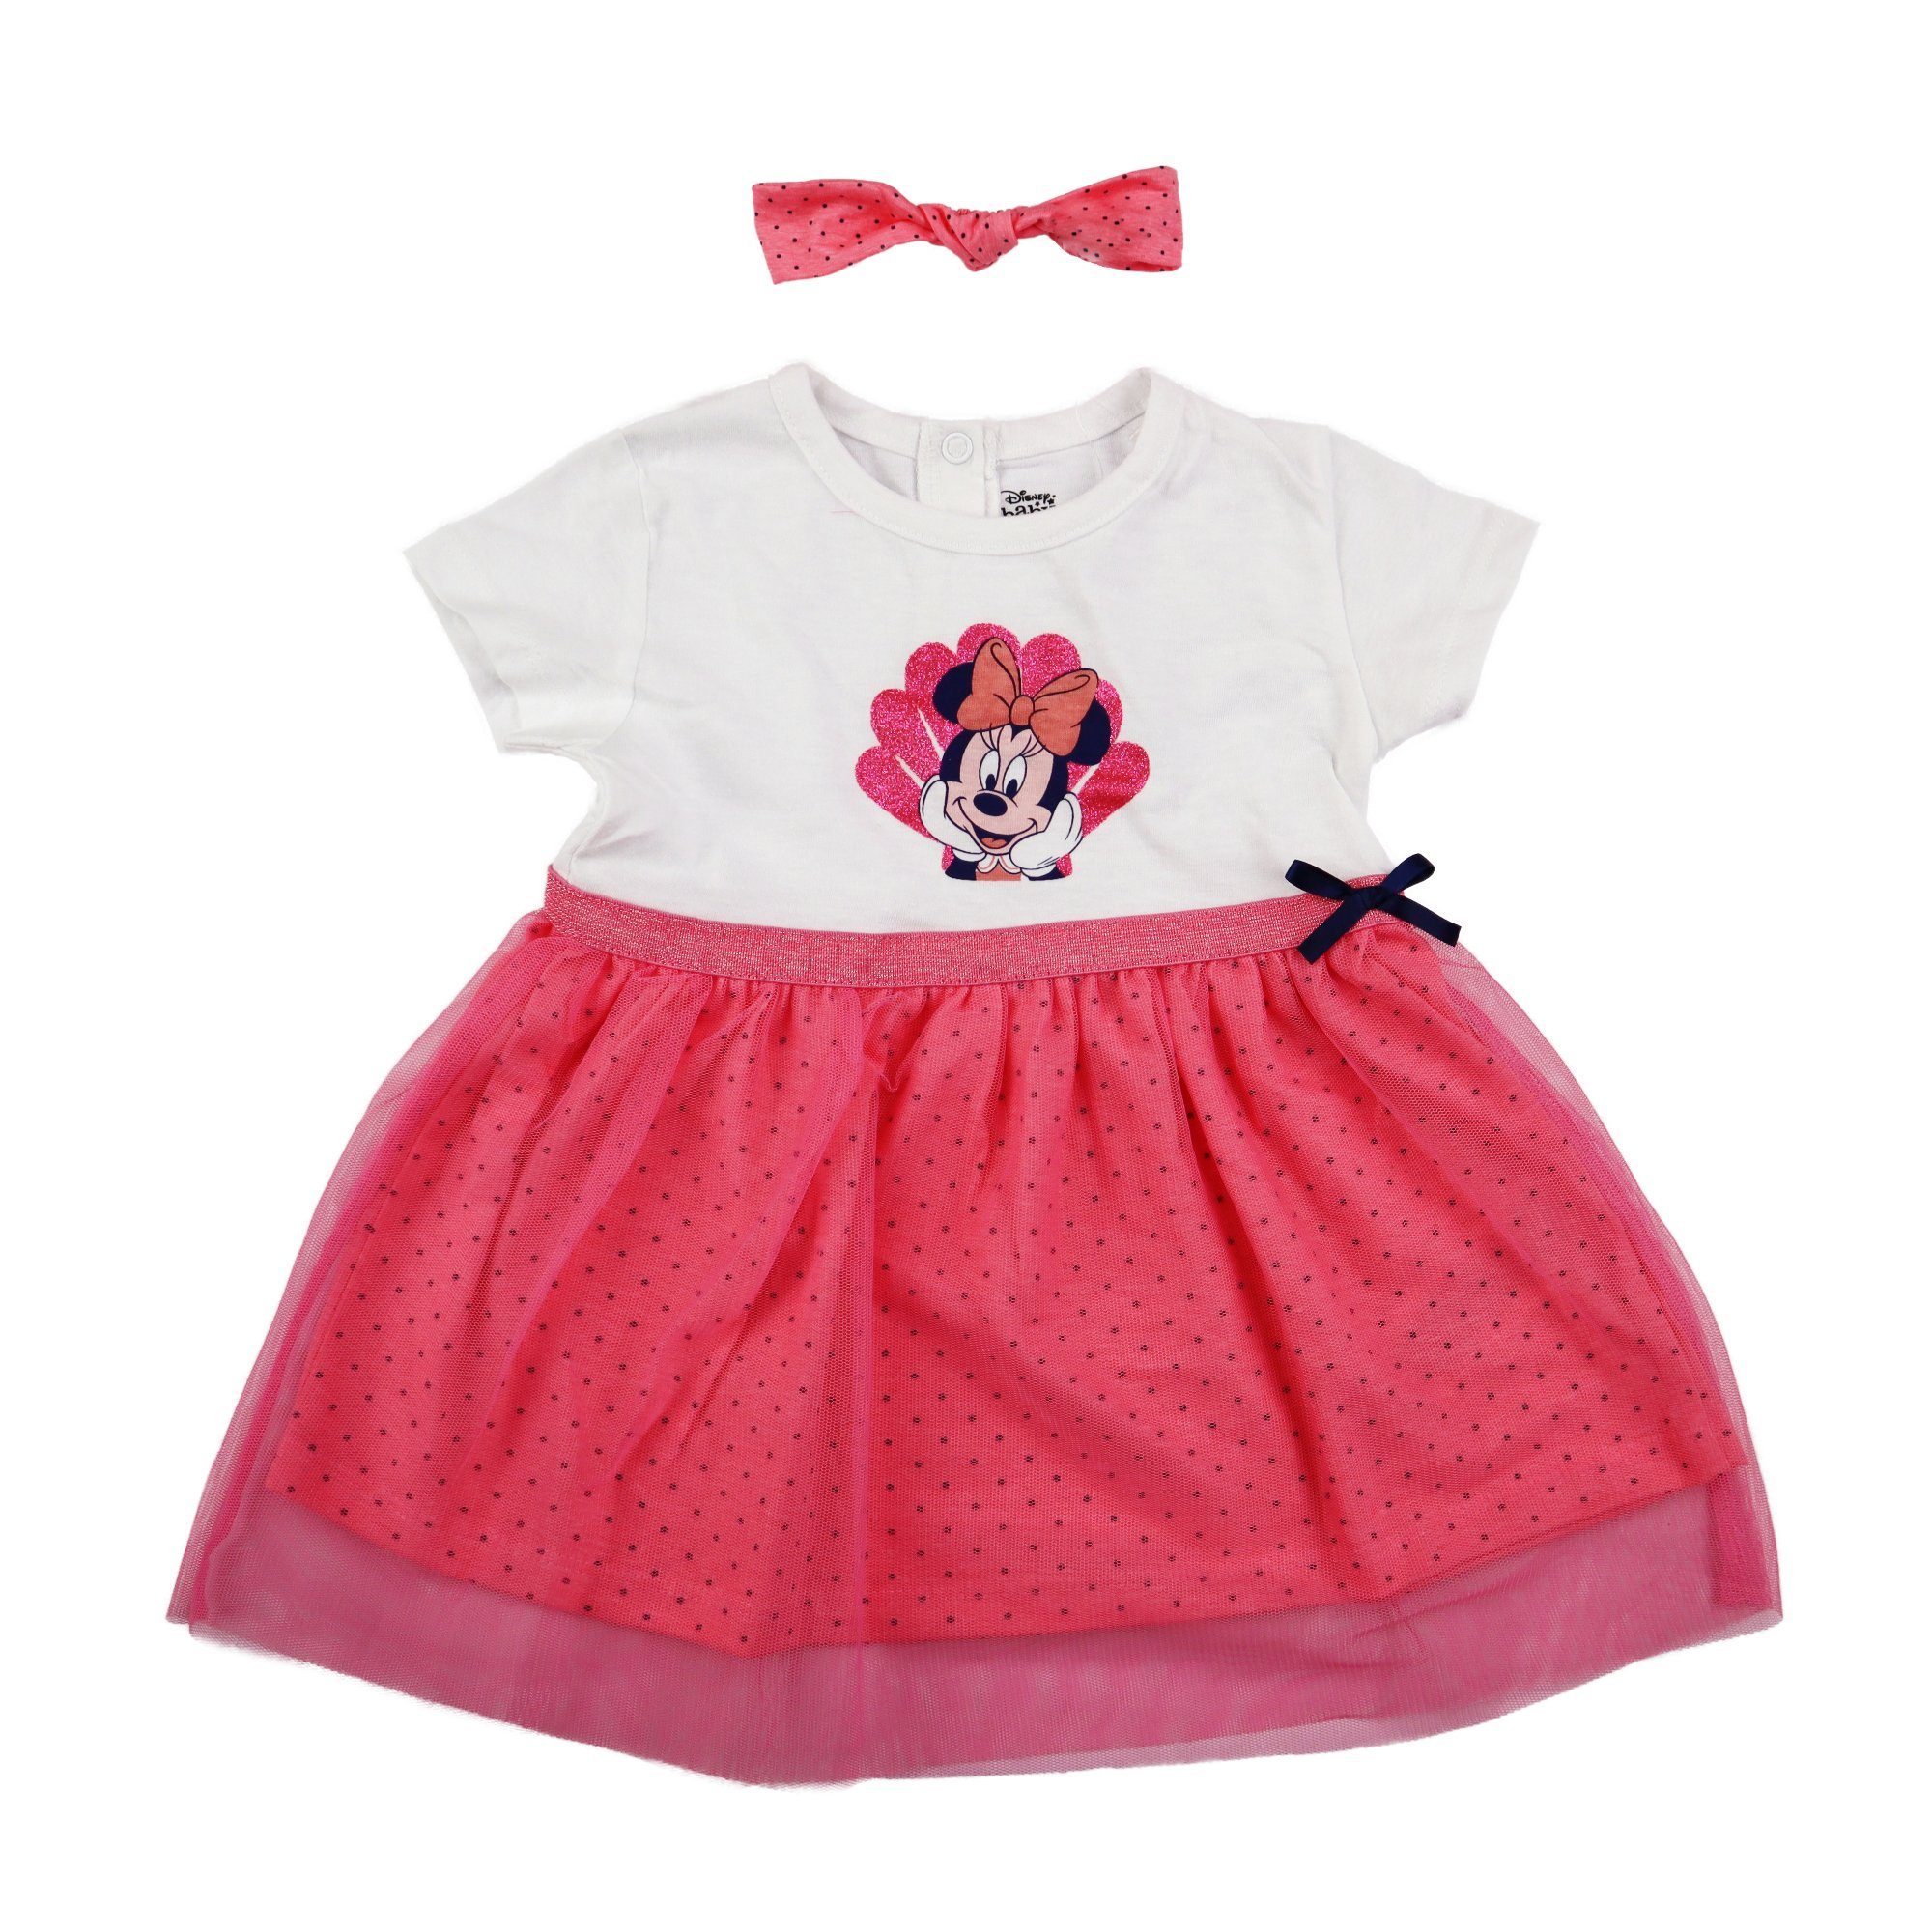 Disney Minnie Mouse Sommerkleid Minnie Maus Baby Mädchen Kleid Gr. 62 bis 86, Baumwolle